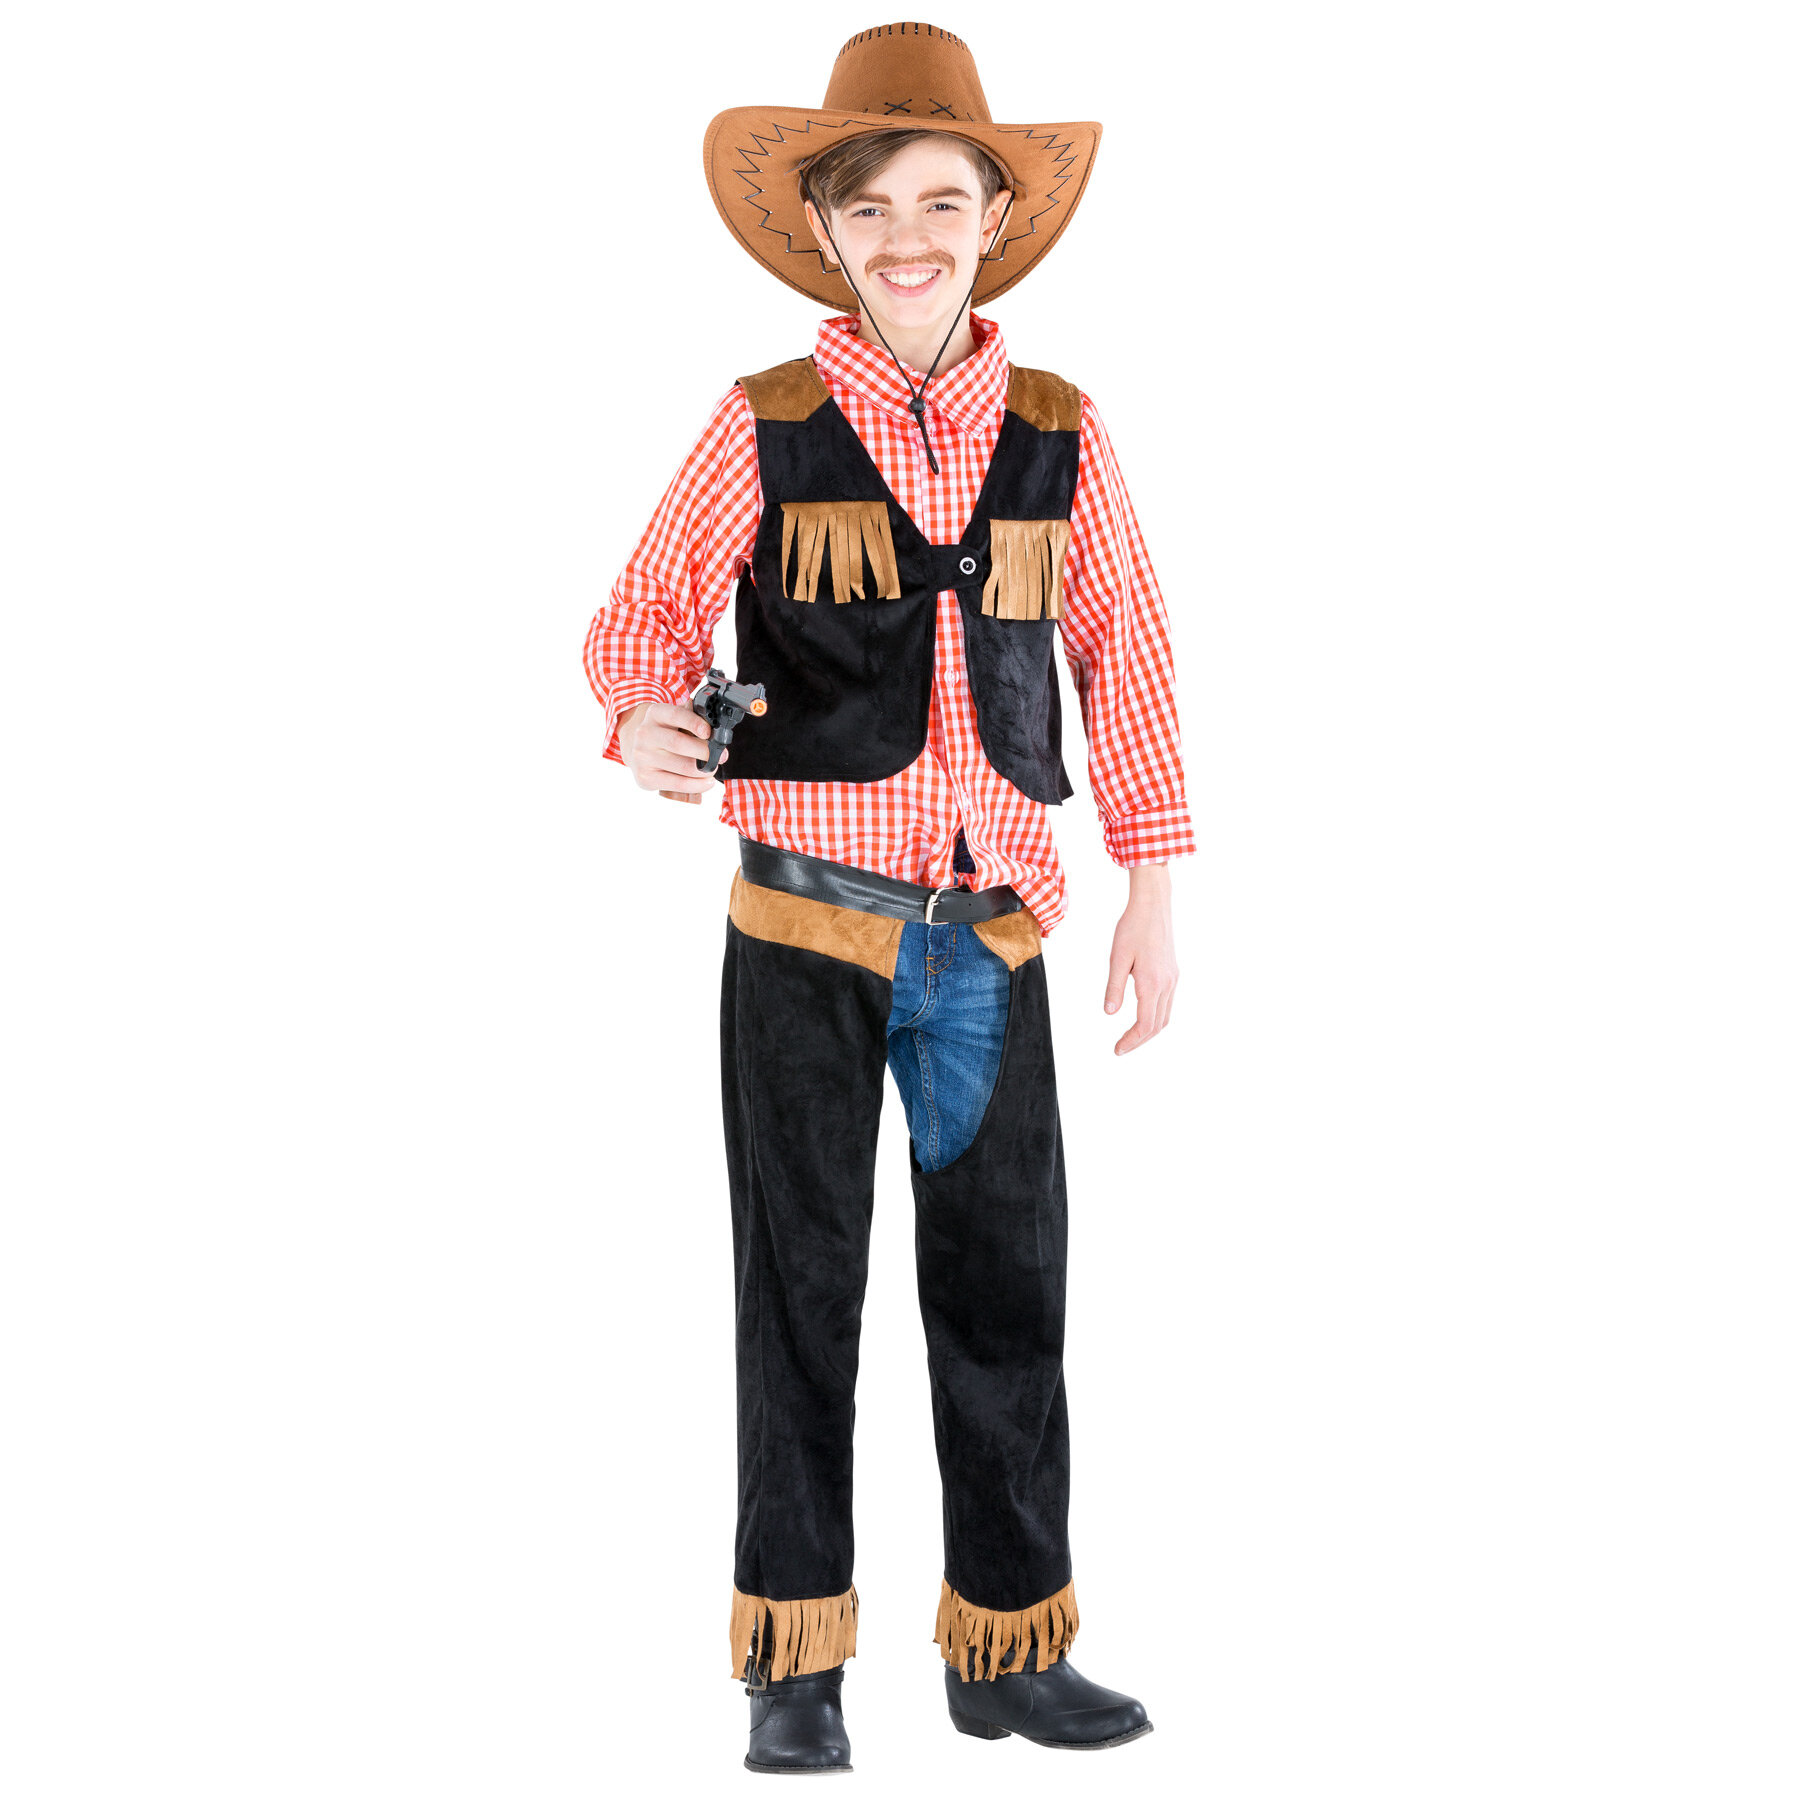 tectake Boysa Cowboy Jimmy Costume - 116 (5-7y)